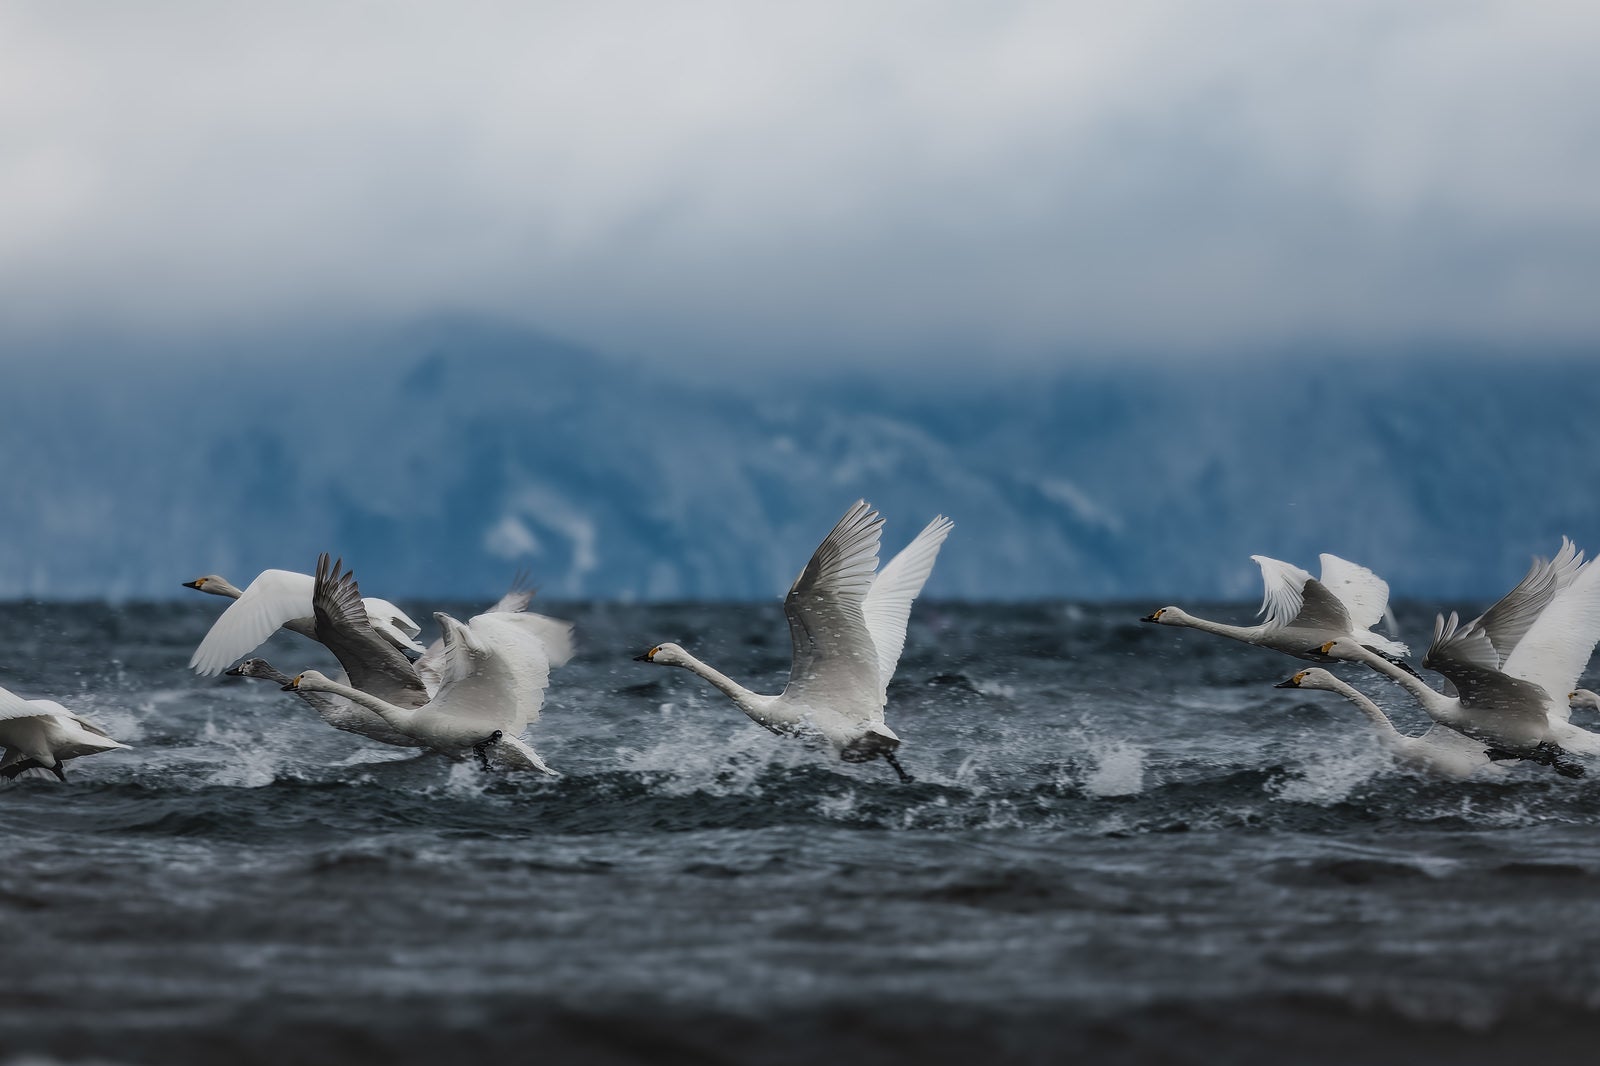 「水面を蹴り上げる白鳥の群れ」の写真